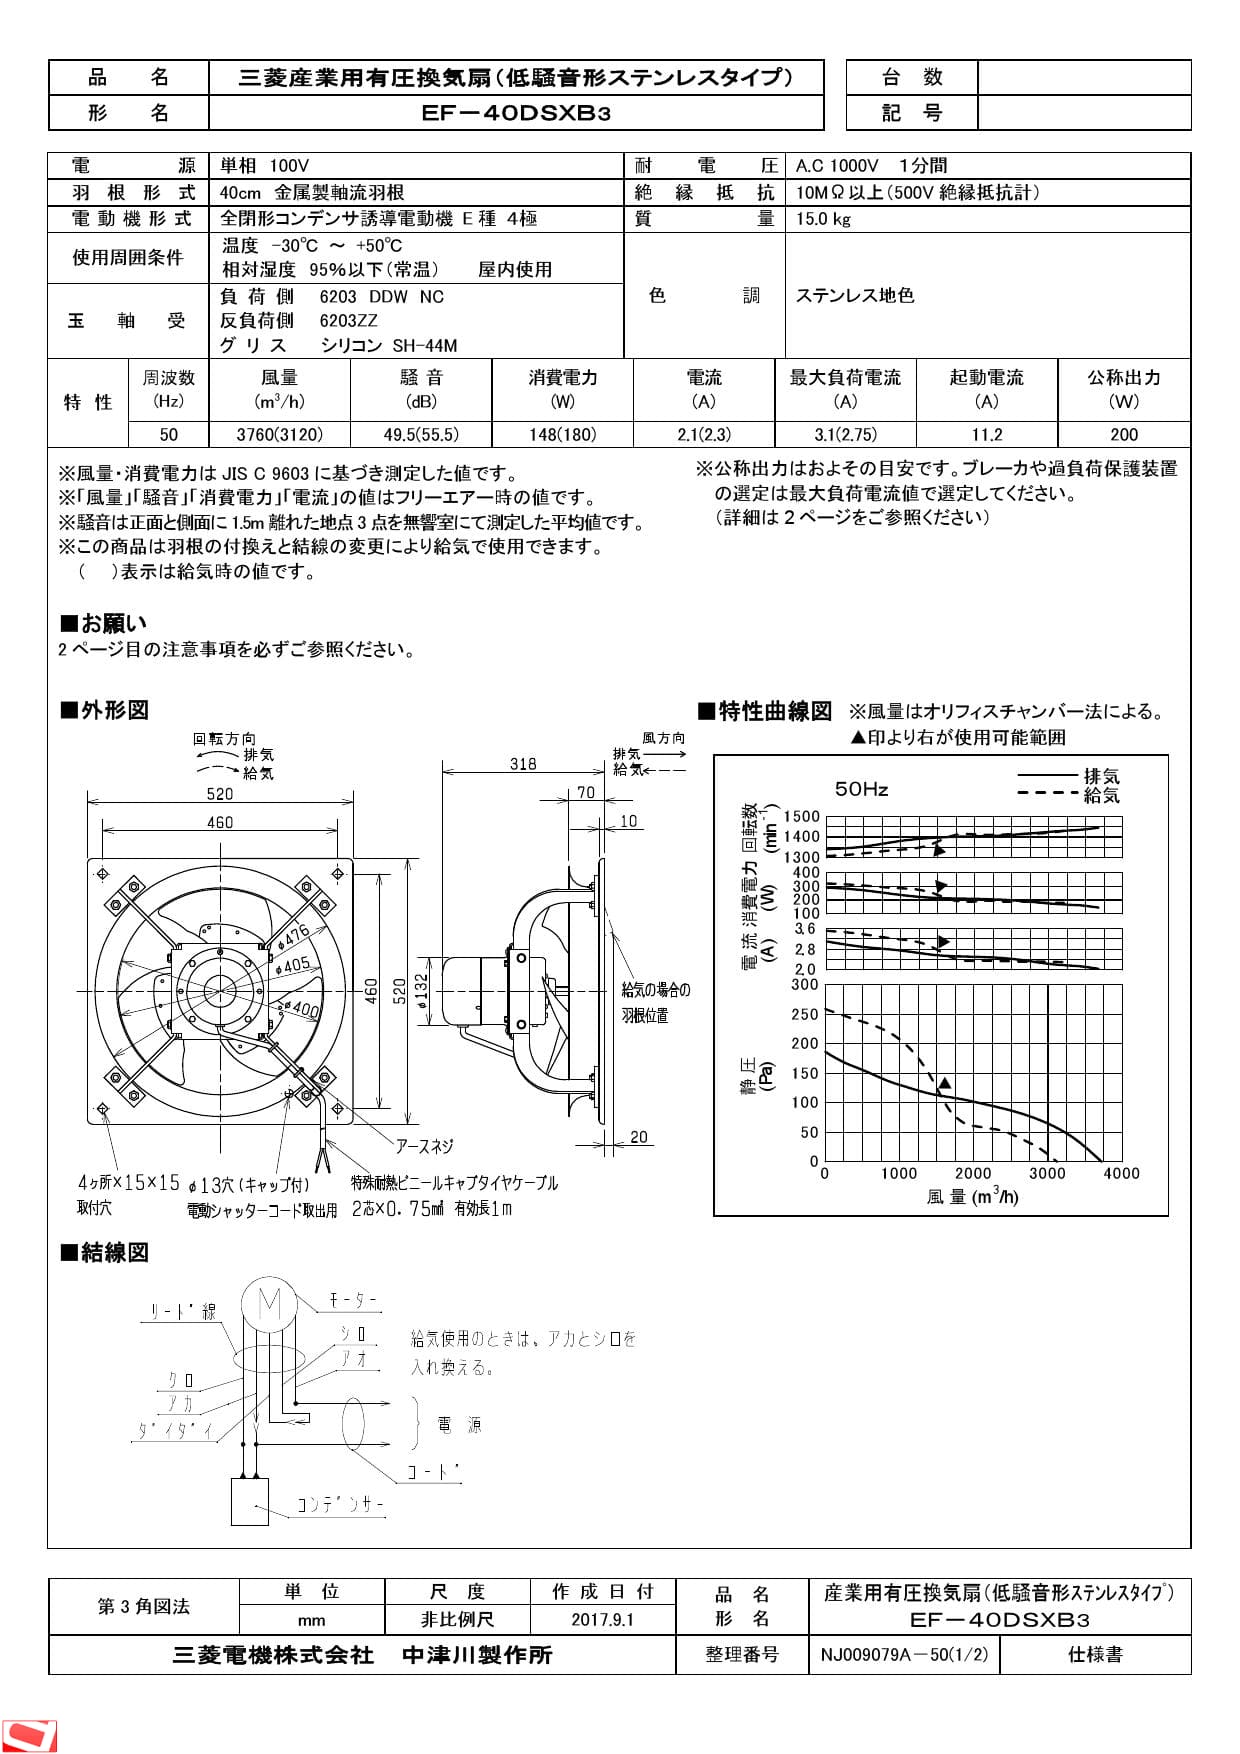 三菱電機 EF-40DSXB3納入仕様図 | 通販 プロストア ダイレクト